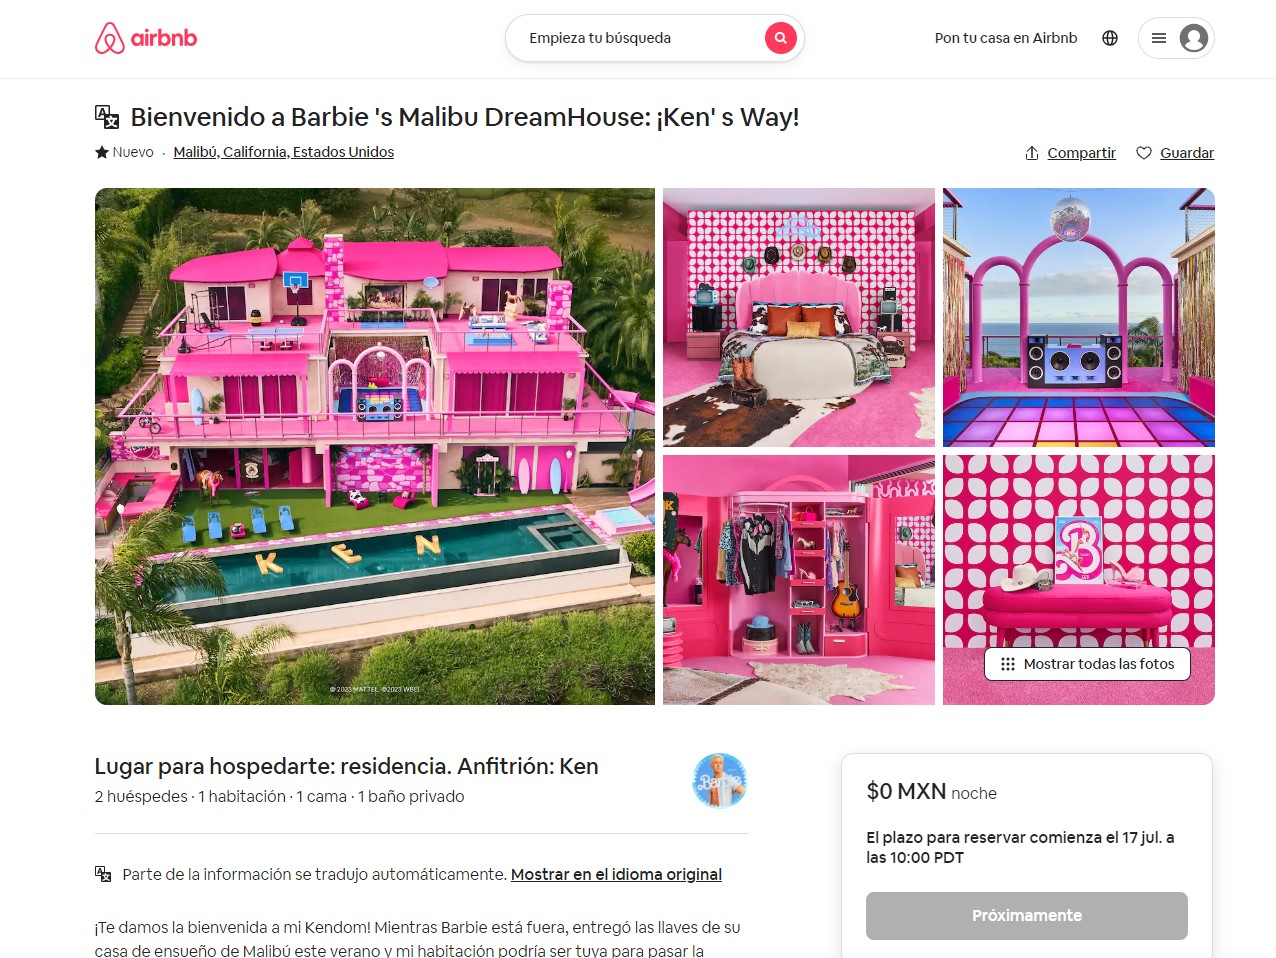 Los afortunados que logren hospedarse en la mansión, podrán hacerlo completamente gratis
Foto: Airbnb